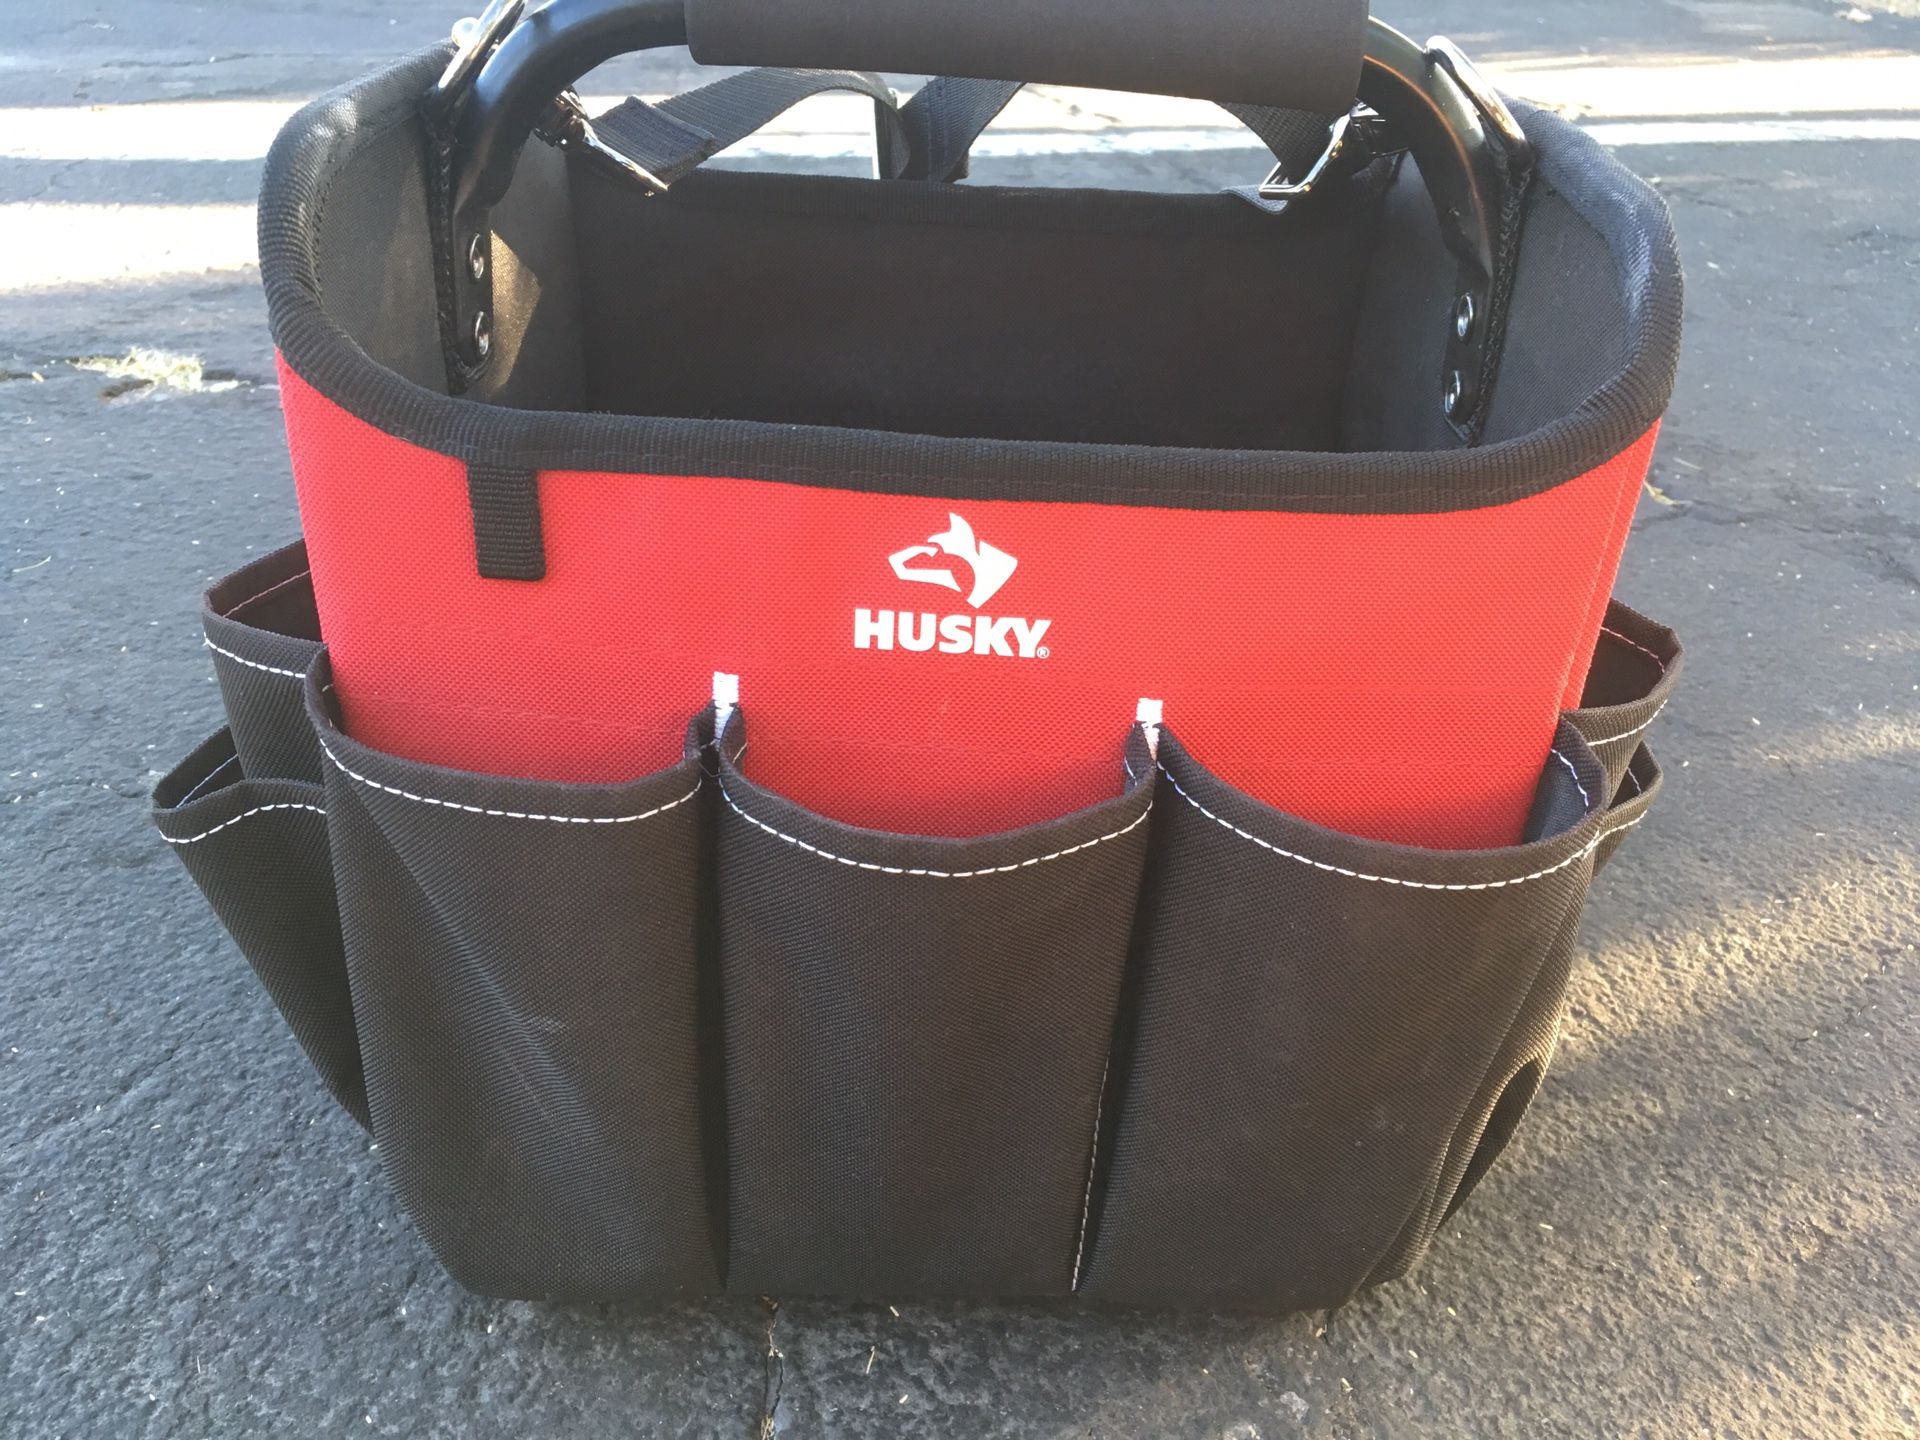 Brand new husky tool bag